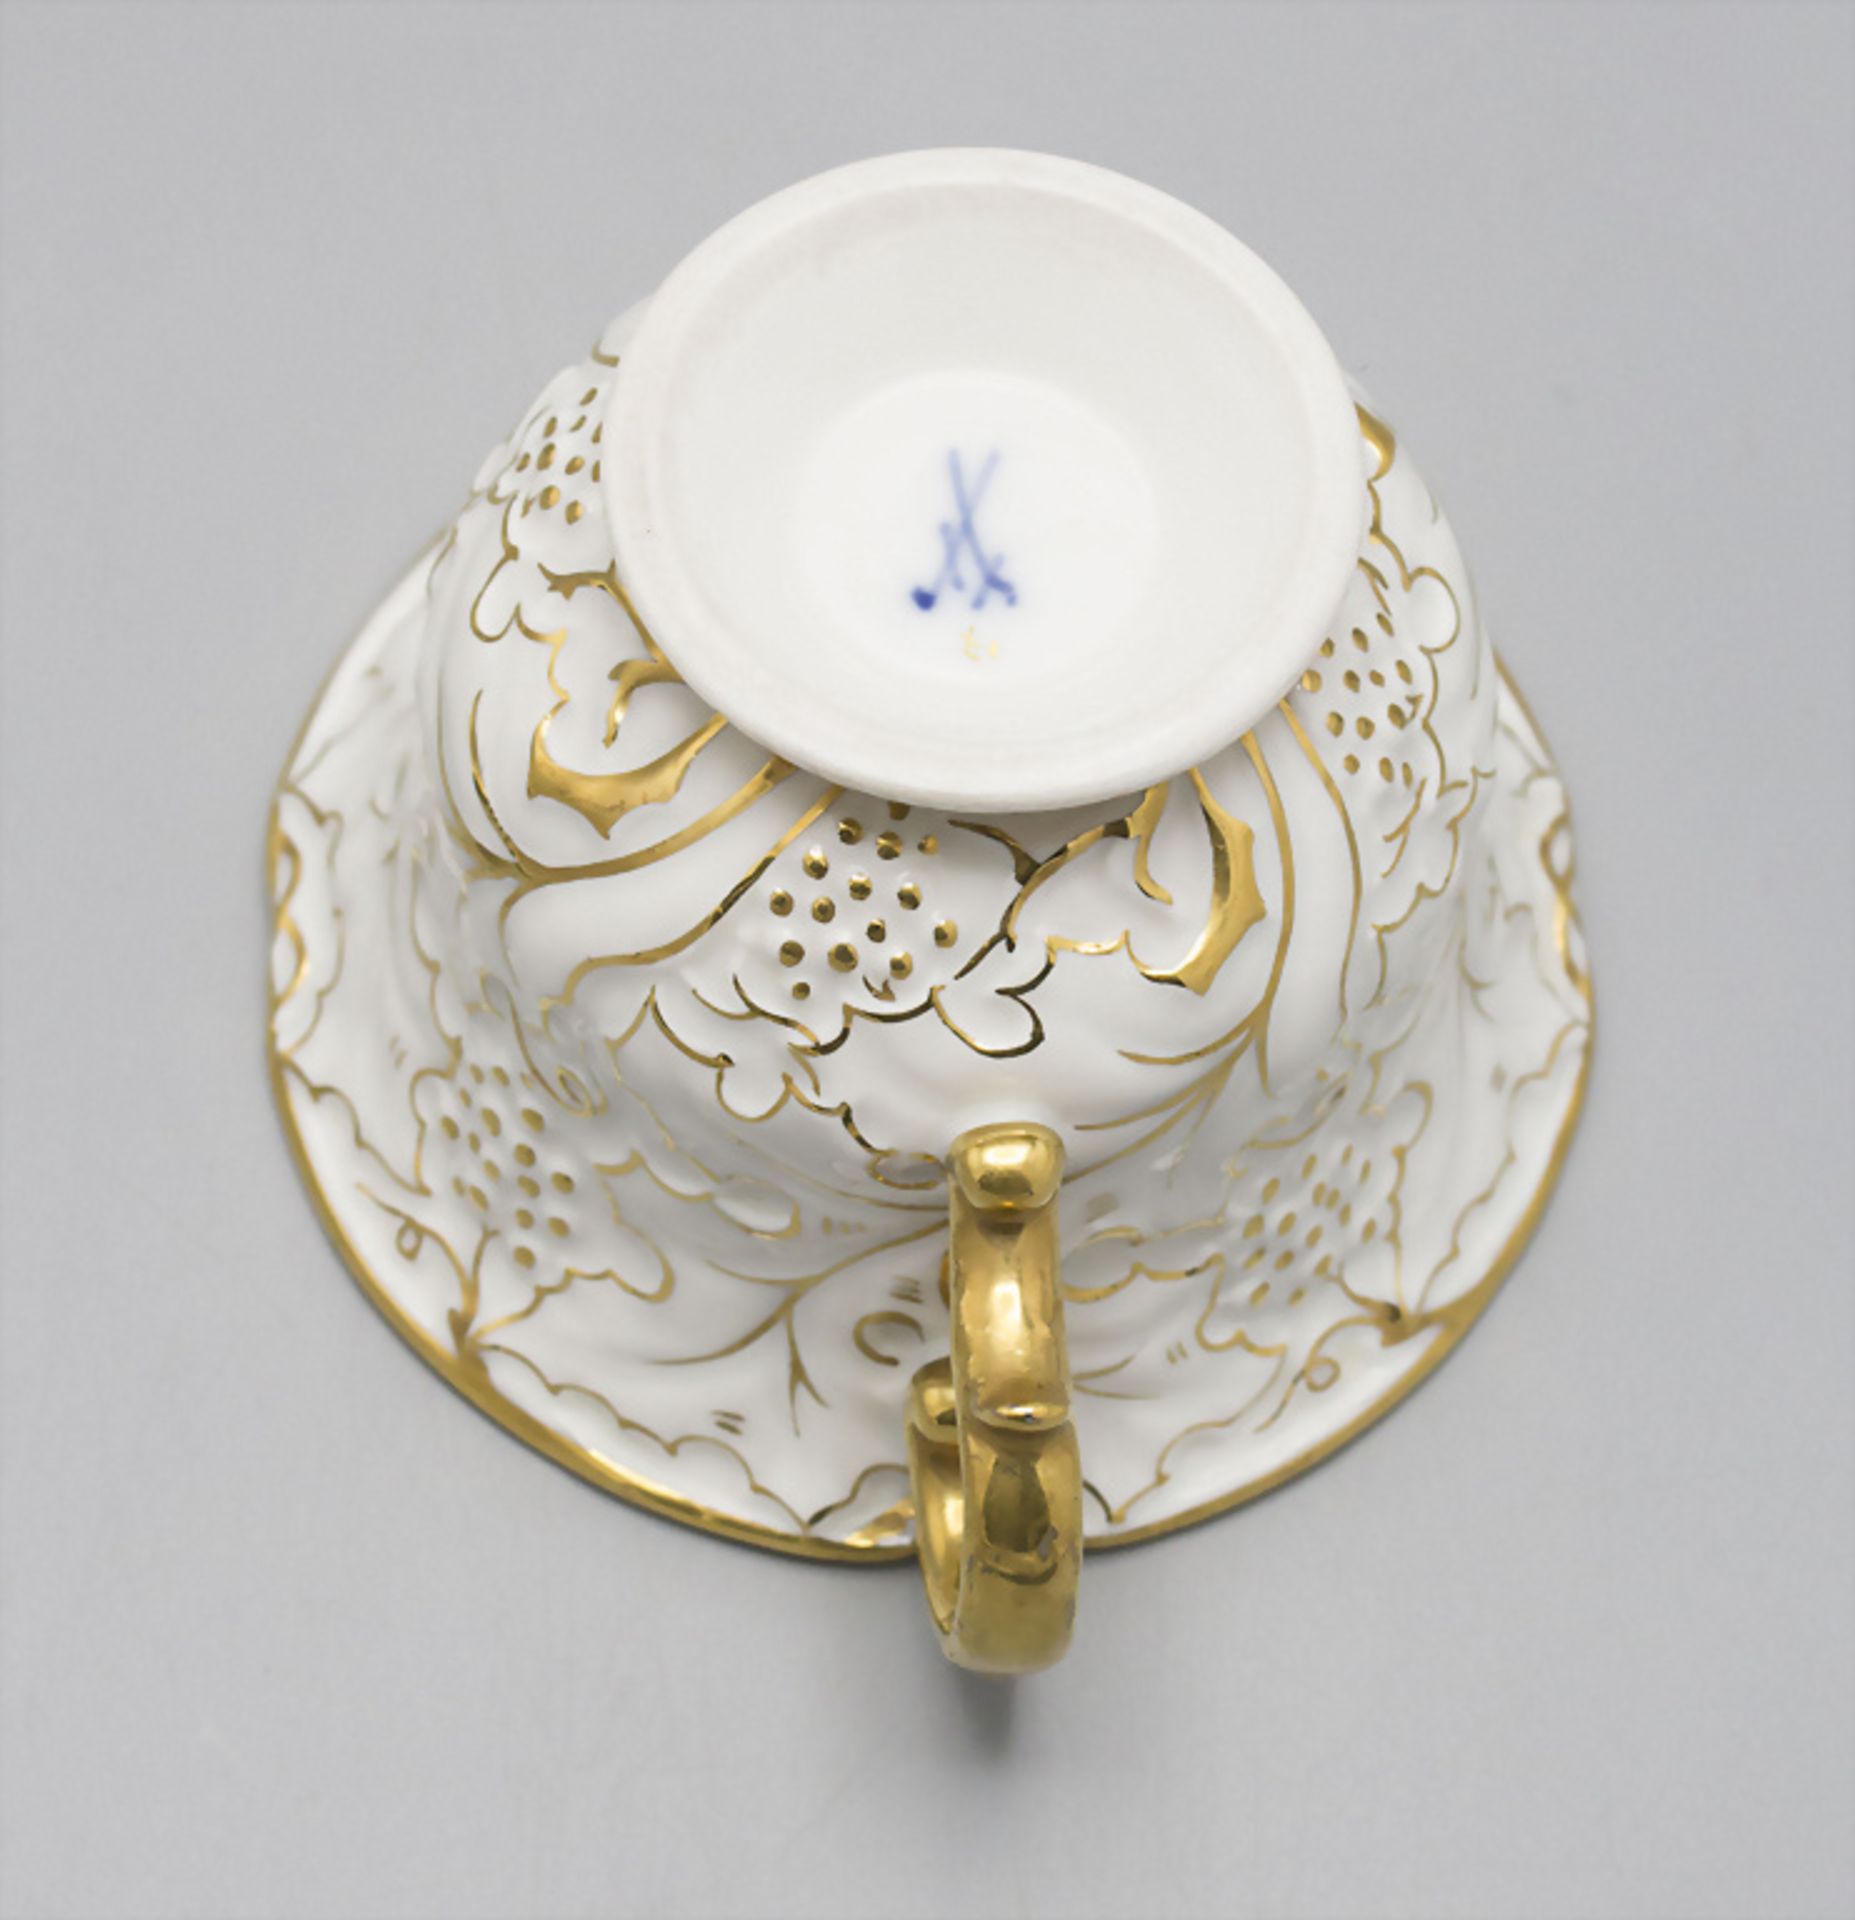 Porzellantasse und Untertasse / A porcelain cup and saucer, Meissen, 20. Jh. - Bild 4 aus 4